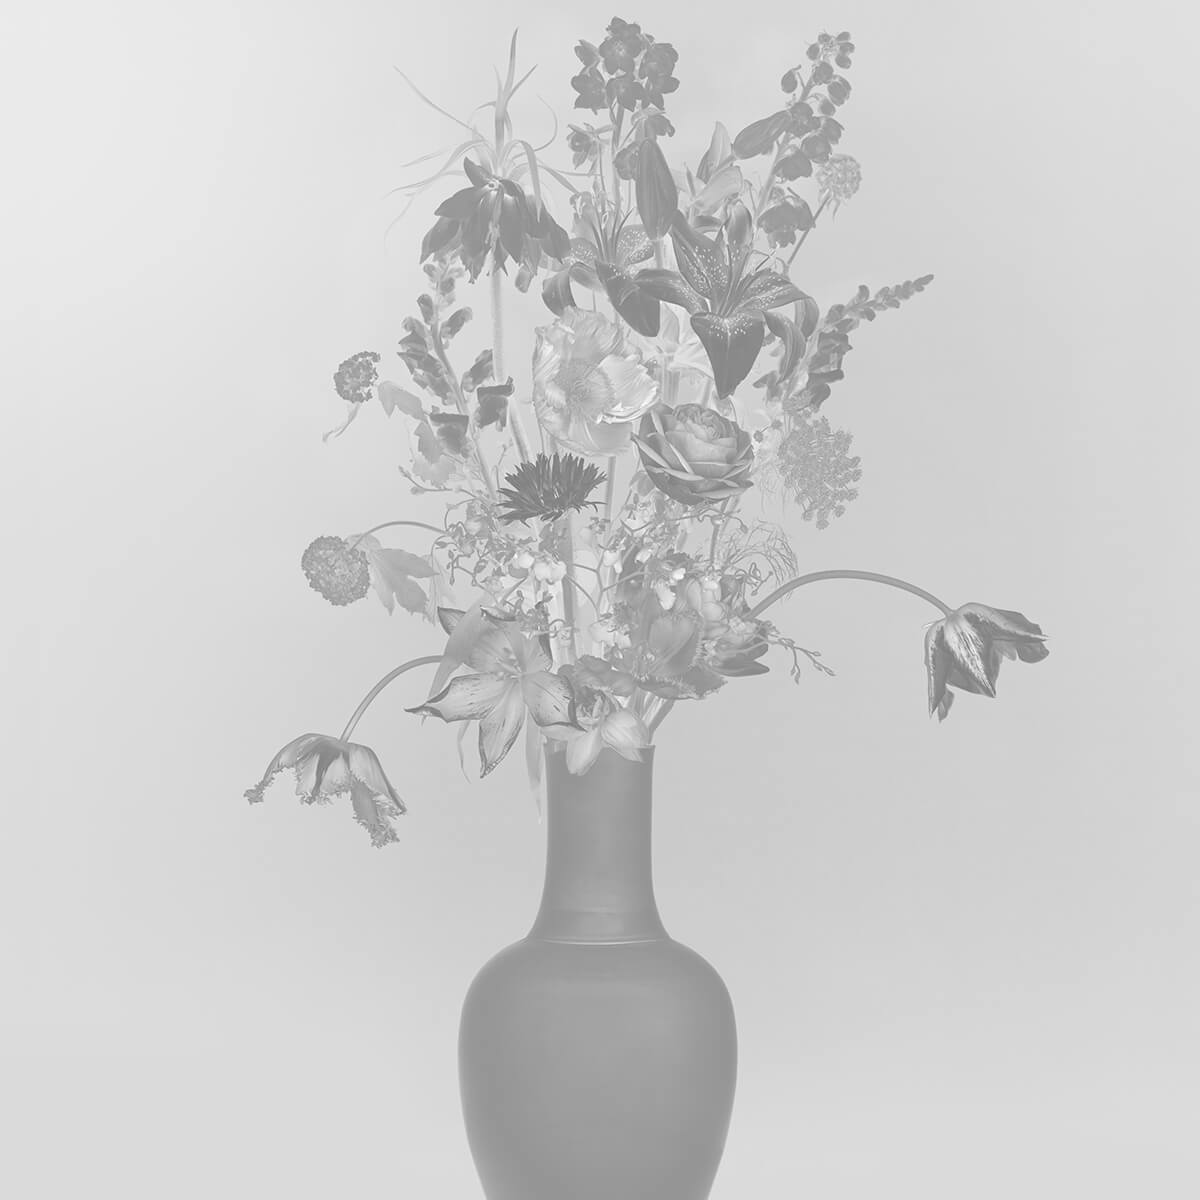 Royaal bloemen boeket zwart-wit